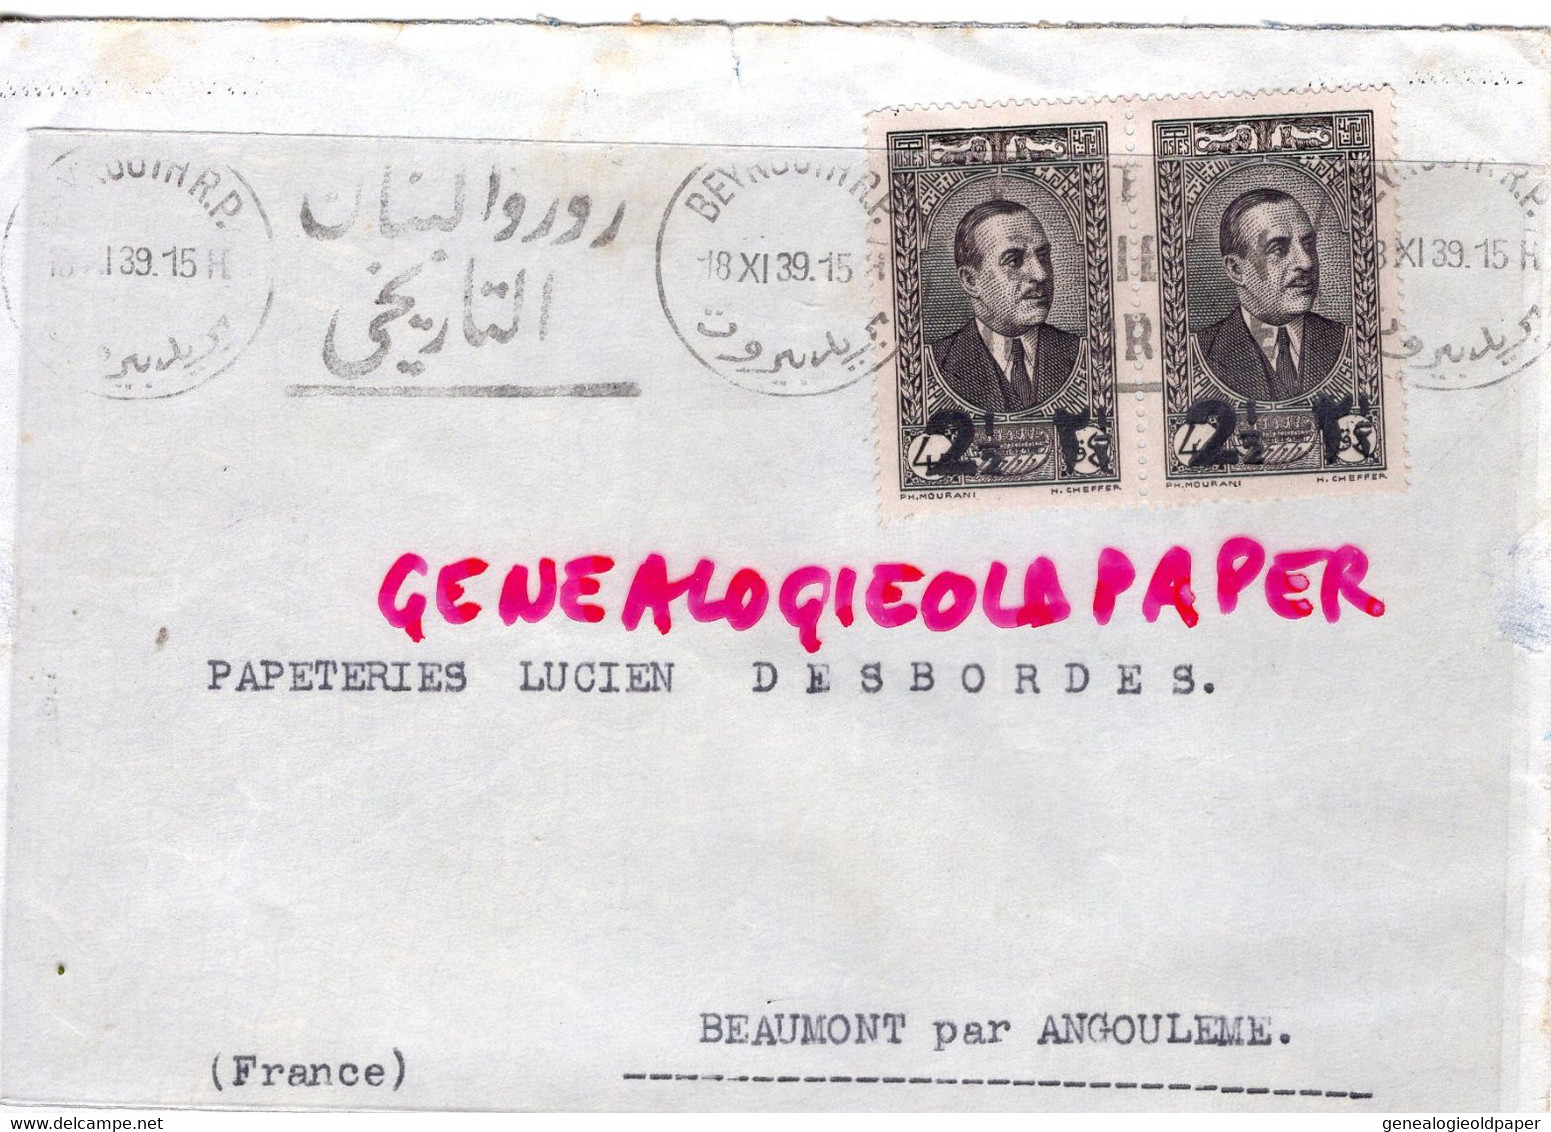 LIBAN- LETTRE MAISON P. ANGHELOPOULO - BEYROUTH- A PAPETERIE LUCIEN DESBORDES -BEAUMONT PAR ANGOULEME-1939 - Liban